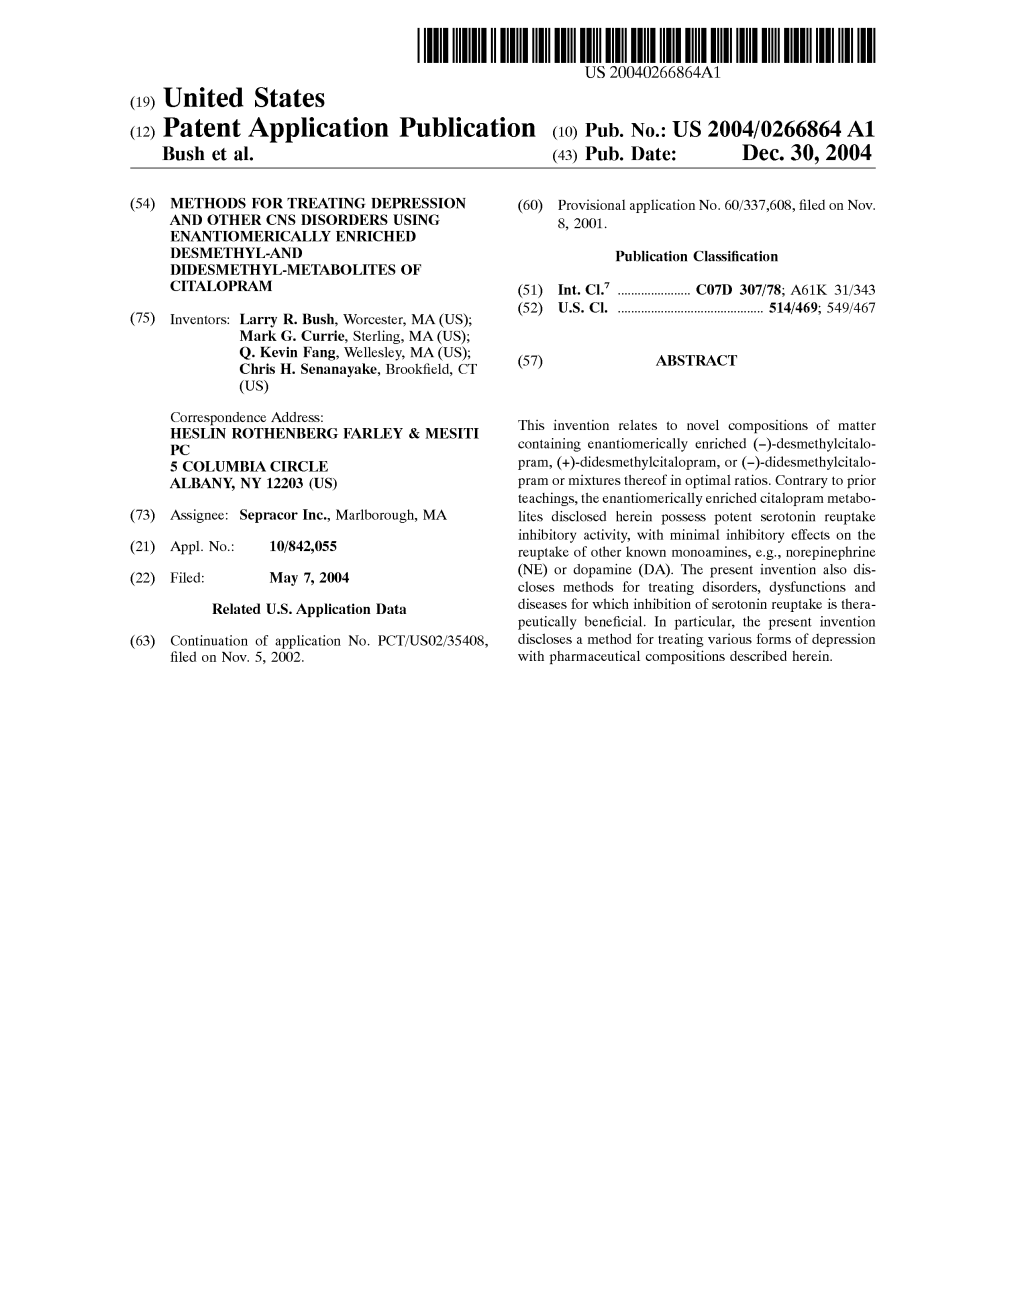 (12) Patent Application Publication (10) Pub. No.: US 2004/0266864 A1 Bush Et Al